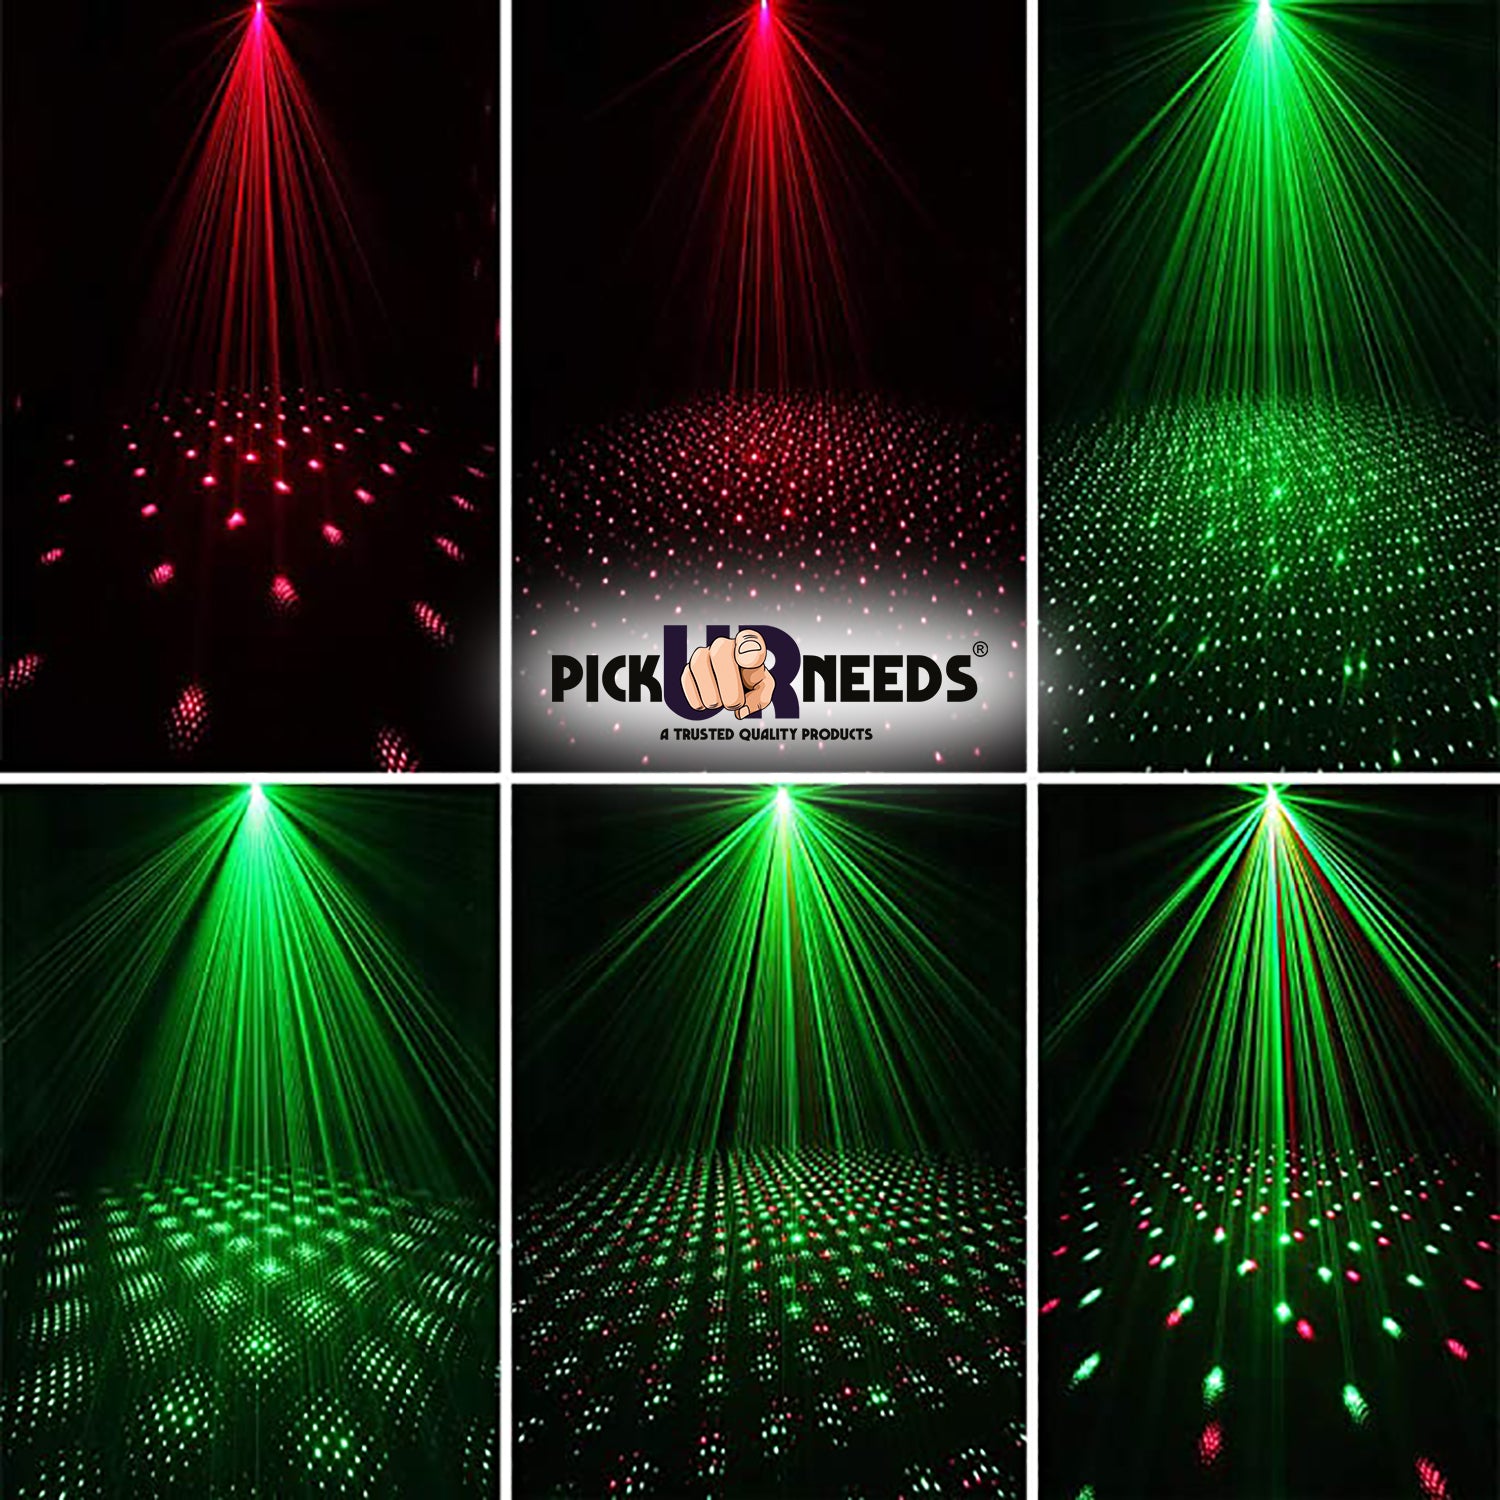 2-Pack LED Party Projectors – West & Arrow